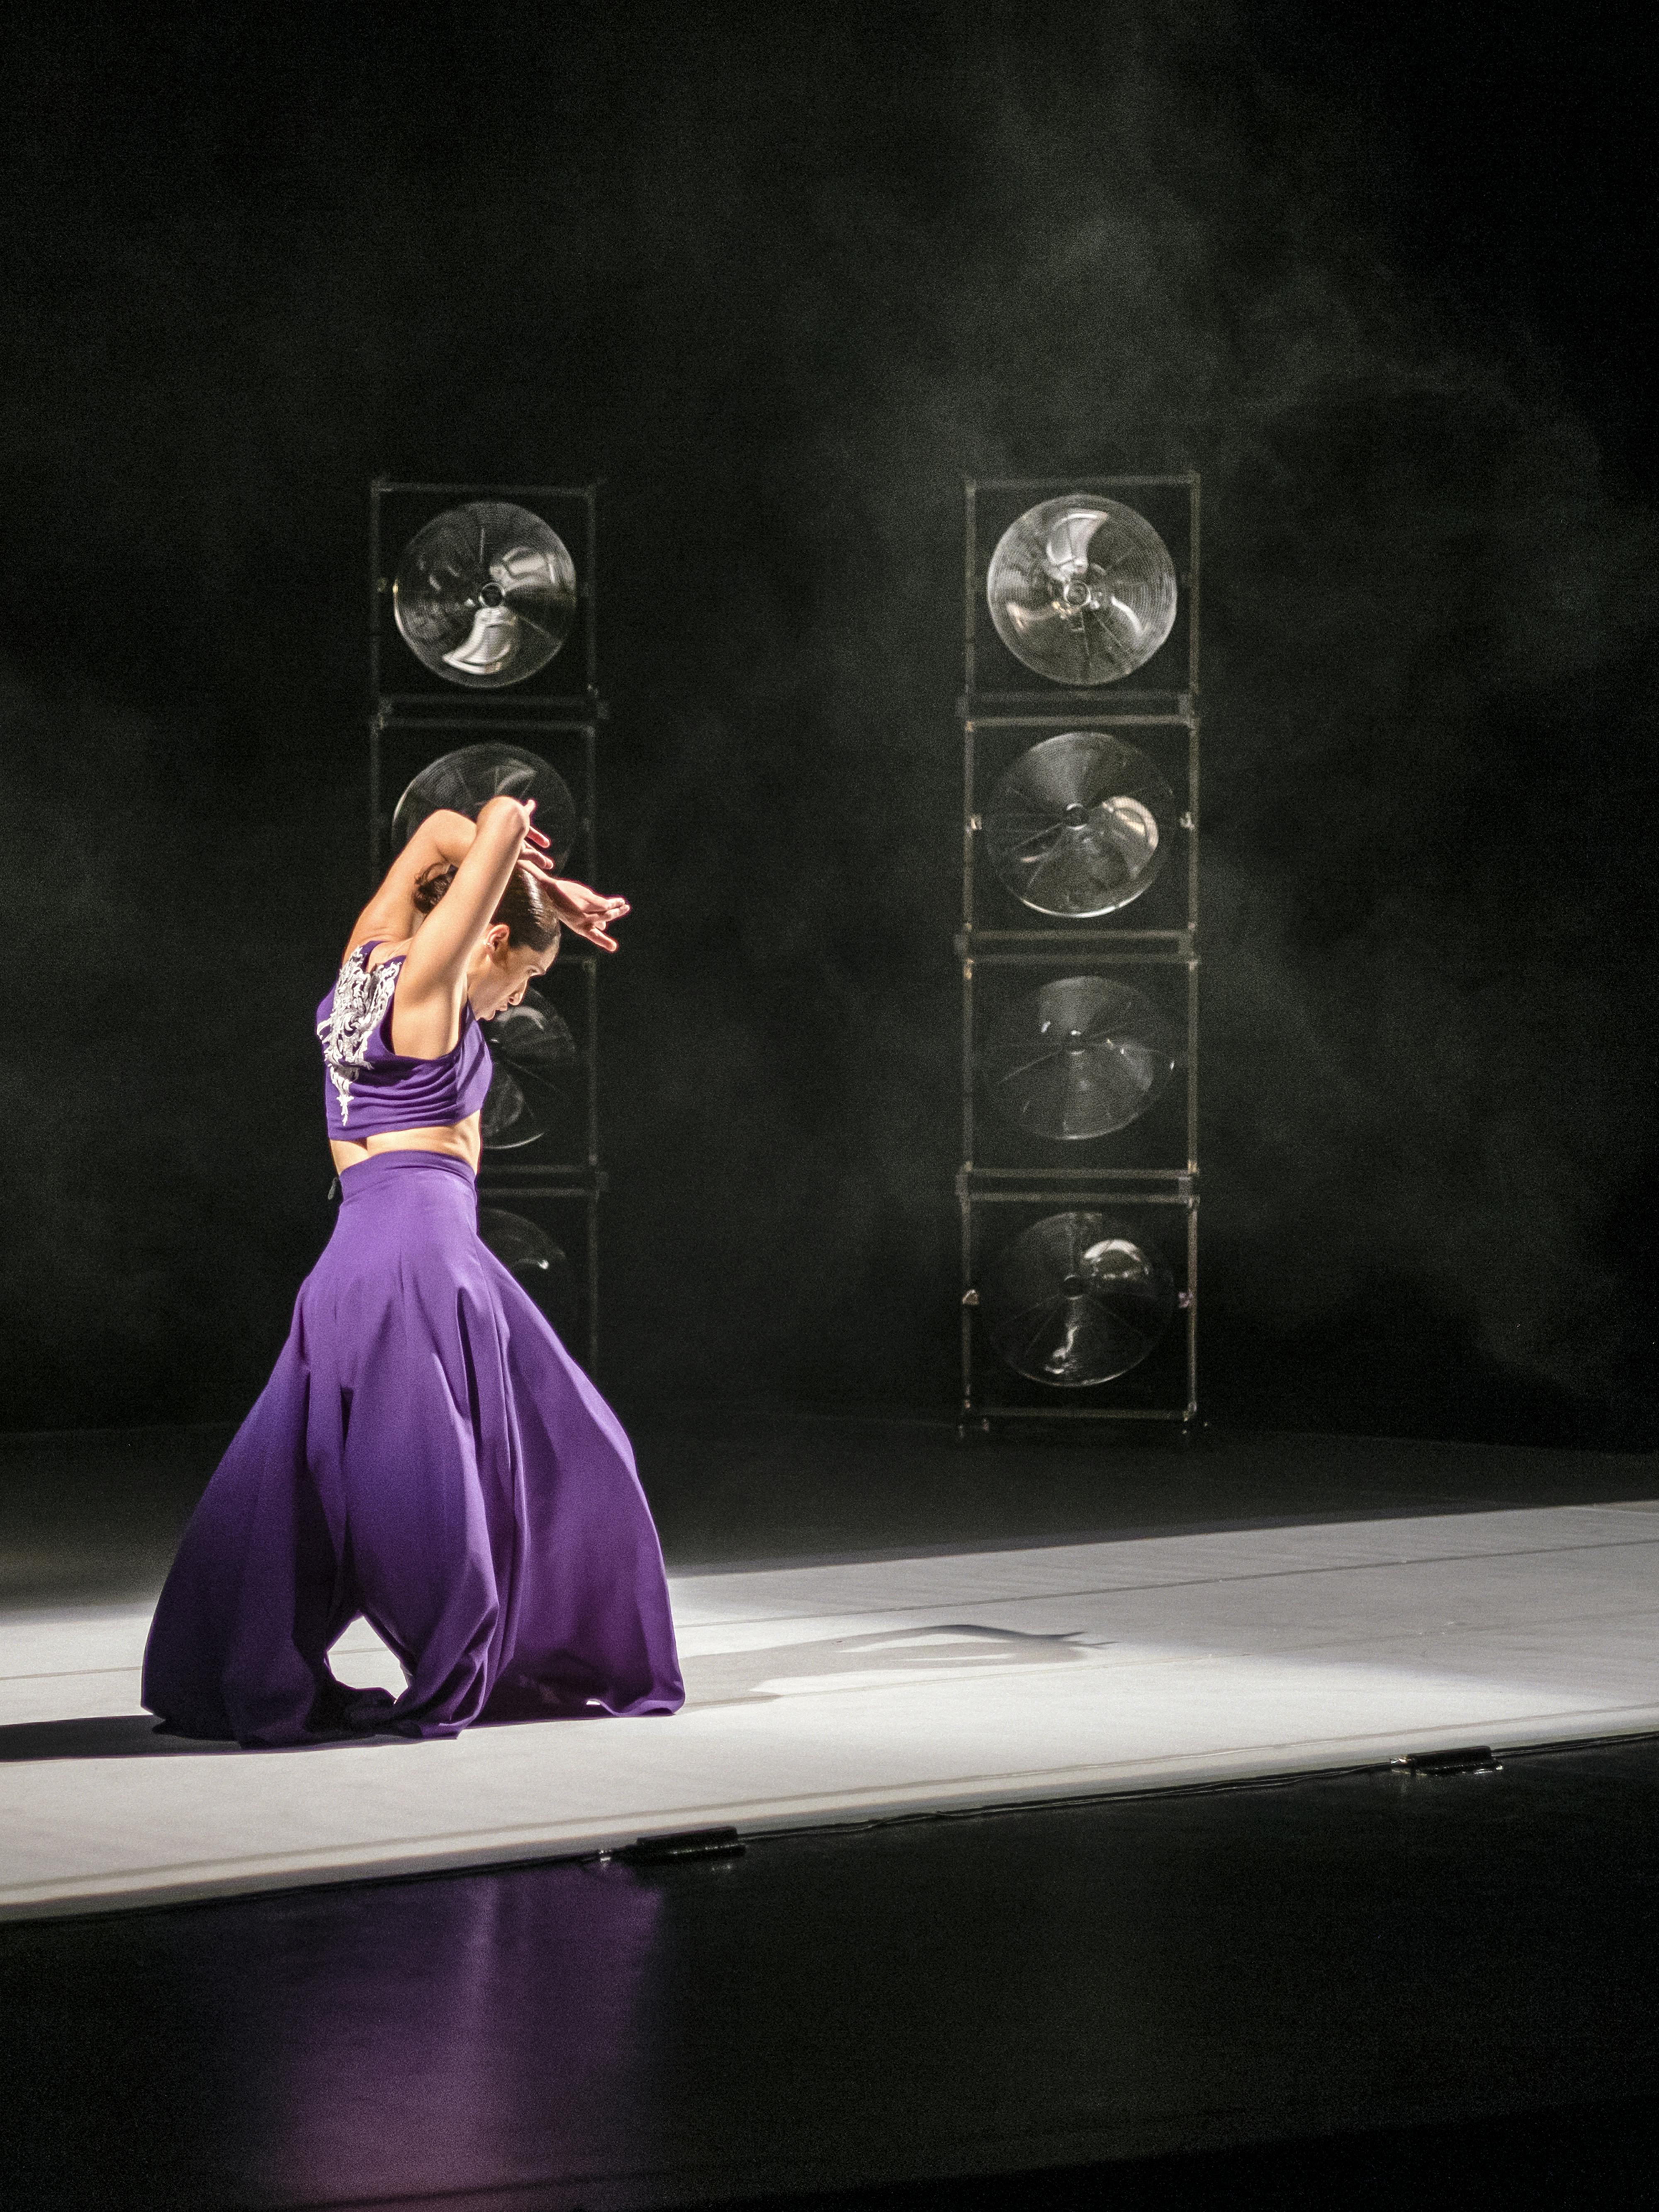 Una danzatrice di flamenco in lungo abito viola durante la performance YouMe. È illuminata da una striscia di luce; dietro di lei ci sono due colonne di ventilatori metallici sovrapposti.